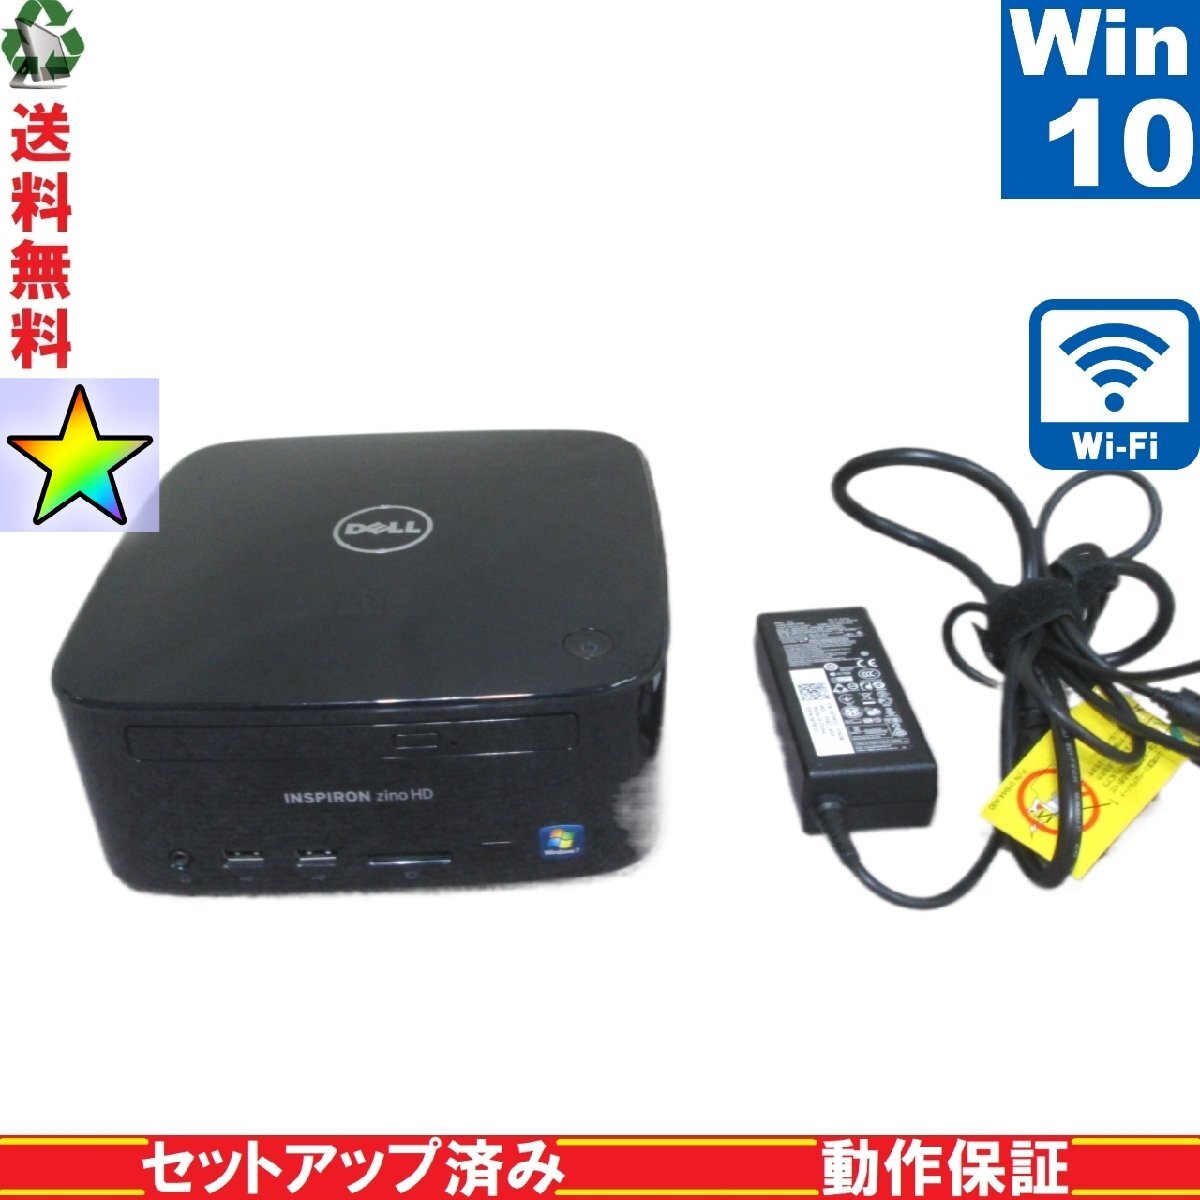 DELL Inspiron 410【Athlon II P360】　【Windows10 Home】 Libre Office スリム型 Wi-Fi HDMI 長期保証 [89219]_画像1